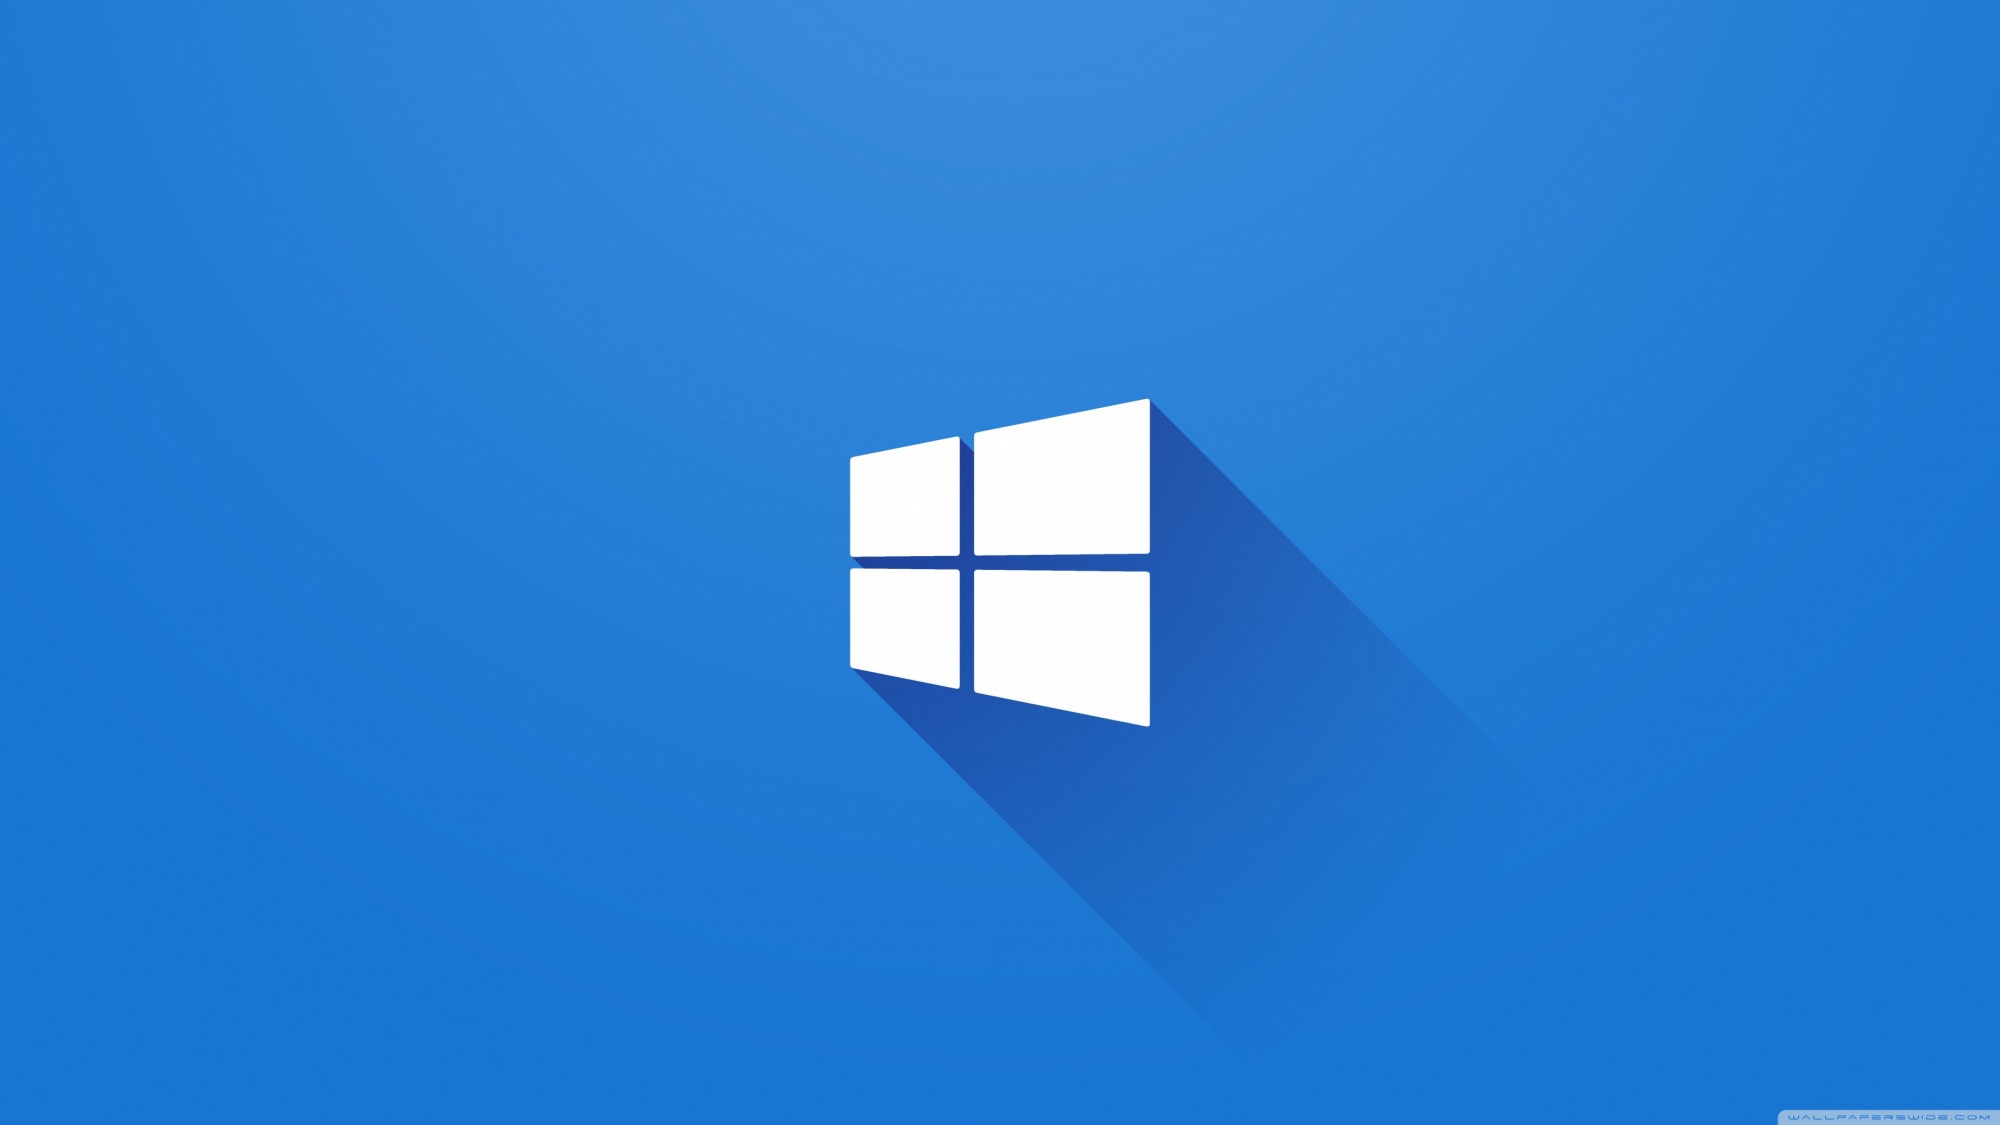 Nếu bạn đang sử dụng Windows 7 hoặc 8, nâng cấp lên Windows 10 sẽ đem đến cho bạn nhiều cải tiến đáng giá. Tăng tốc độ làm việc, cải thiện bảo mật hệ thống và tích hợp nhiều tính năng mới. Hãy xem hình ảnh liên quan đến nâng cấp Windows 10 để thấy những thay đổi đáng chú ý này.